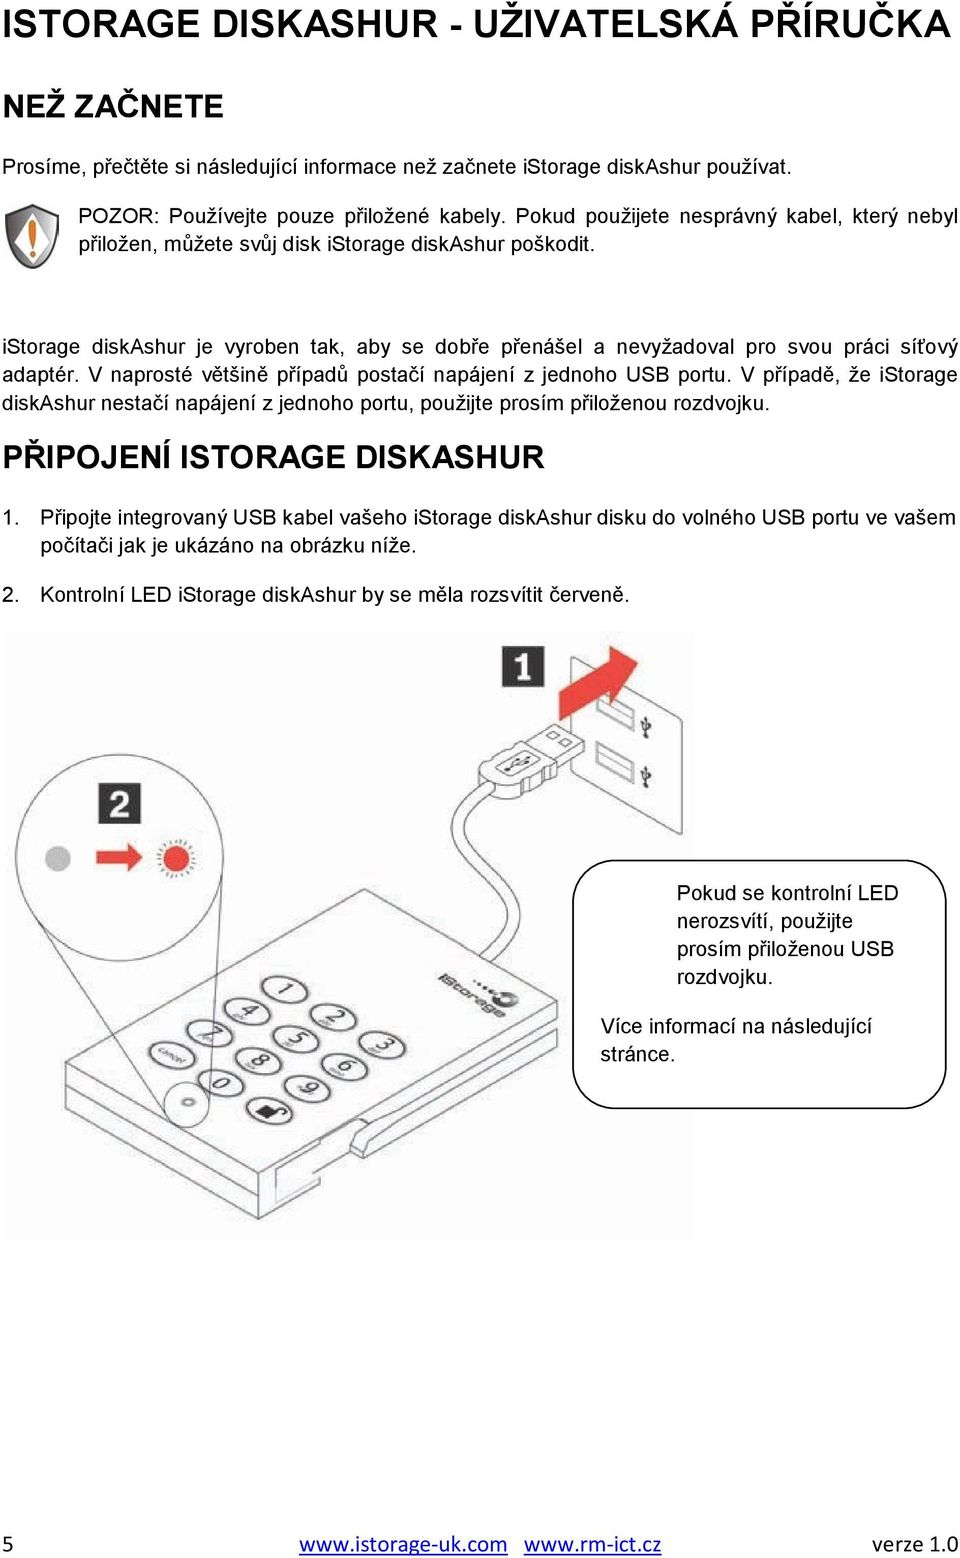 istorage diskashur je vyroben tak, aby se dobře přenášel a nevyžadoval pro svou práci síťový adaptér. V naprosté většině případů postačí napájení z jednoho USB portu.